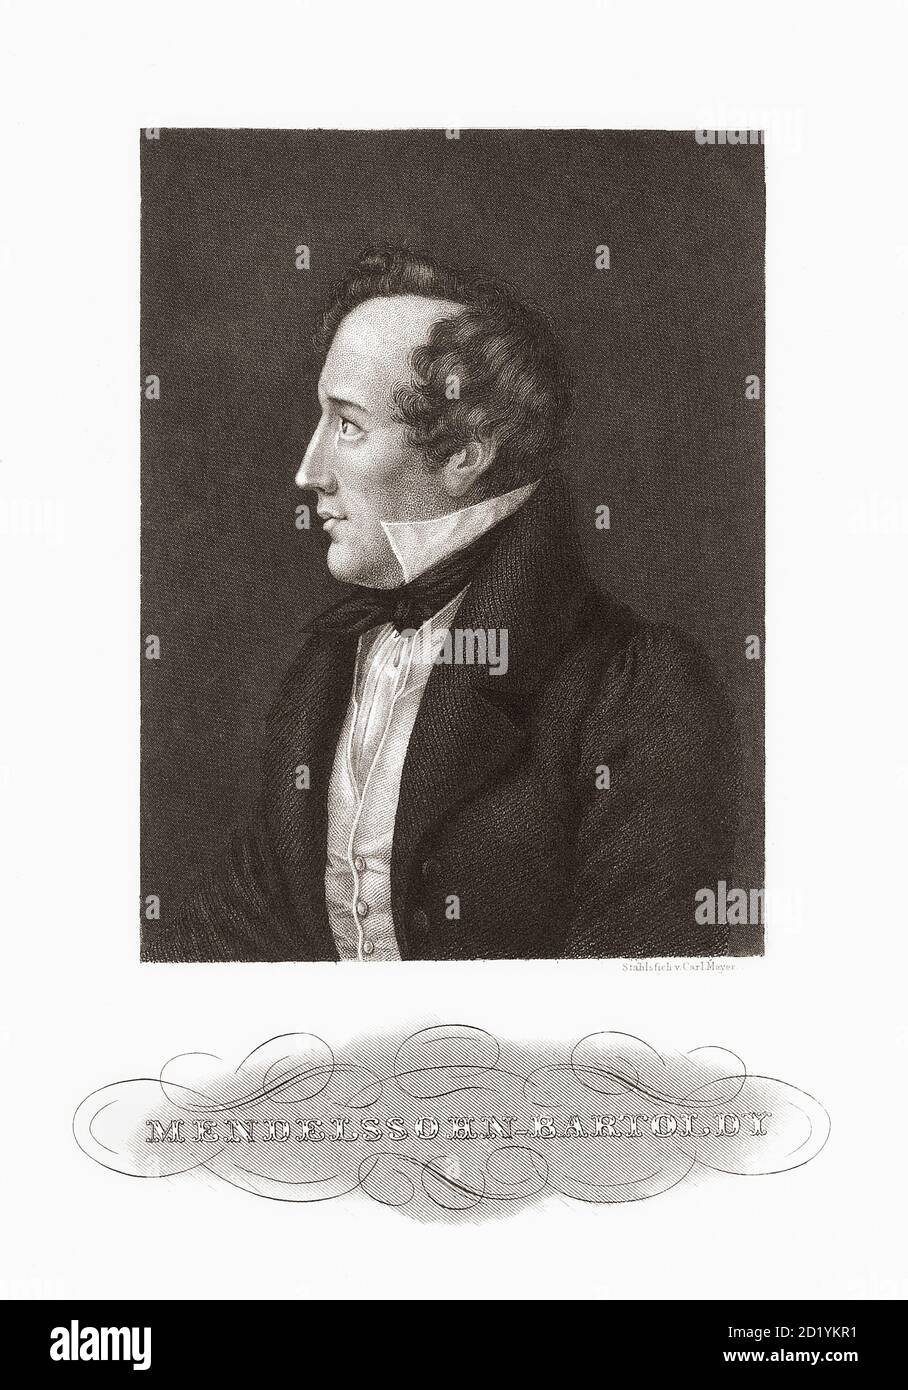 Jakob Ludwig Felix Mendelssohn Bartholdy, 1809–1847, nato come Felix Mendelsssohn. Compositore, pianista, organista e direttore tedesco del primo periodo romantico. Foto Stock